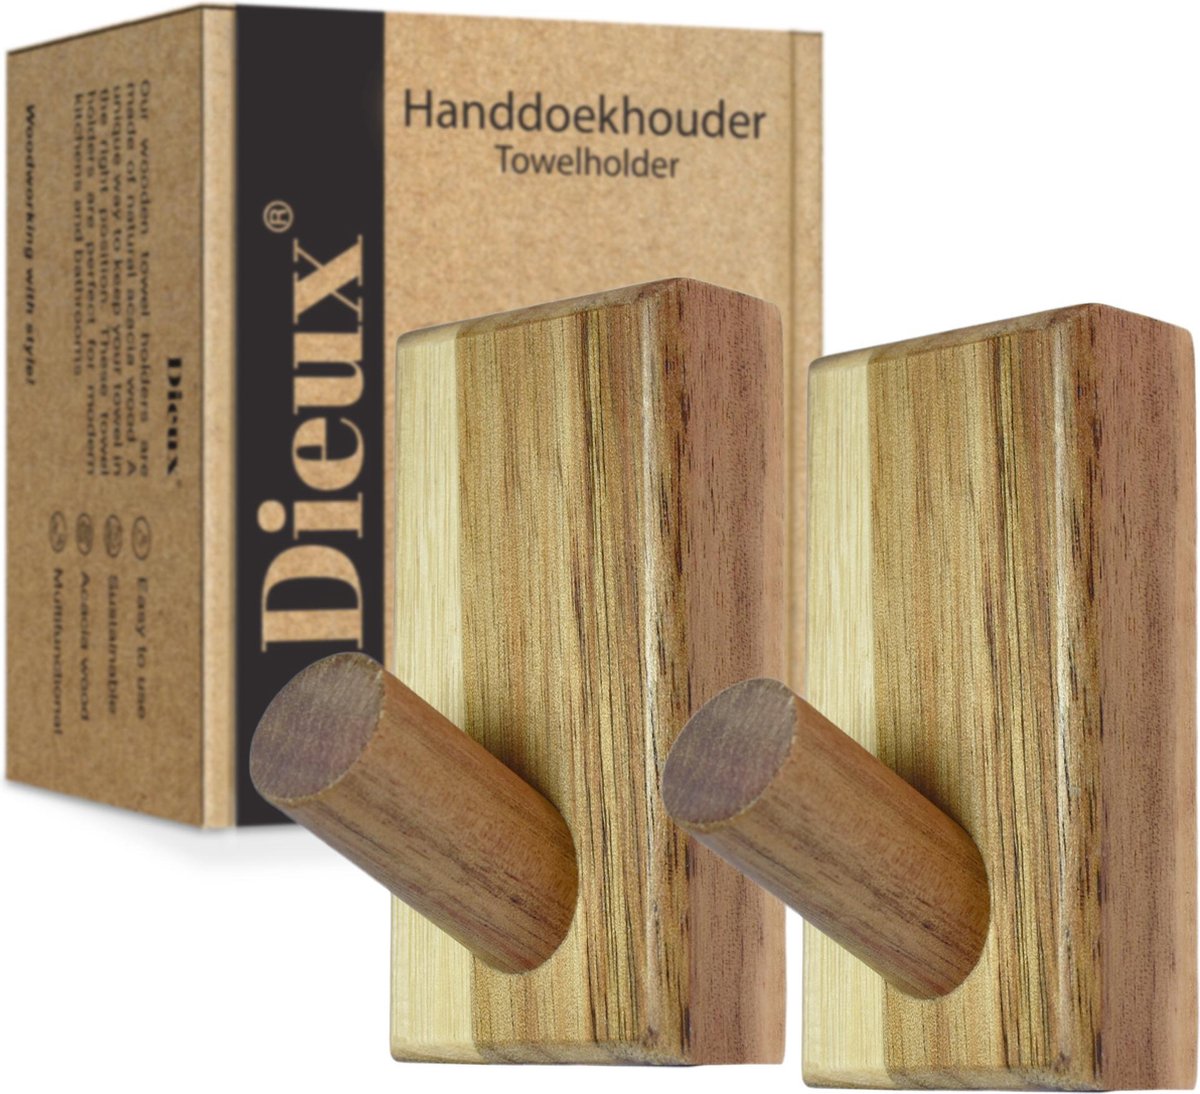 Dieux® - Luxe Handdoekhaakjes Zelfklevend - Handdoekhouder - Wandhaak - Acaciahout Haken - Zelfklevende Haakjes - Handdoeken - Handdoekrek - Badkamer - Keuken